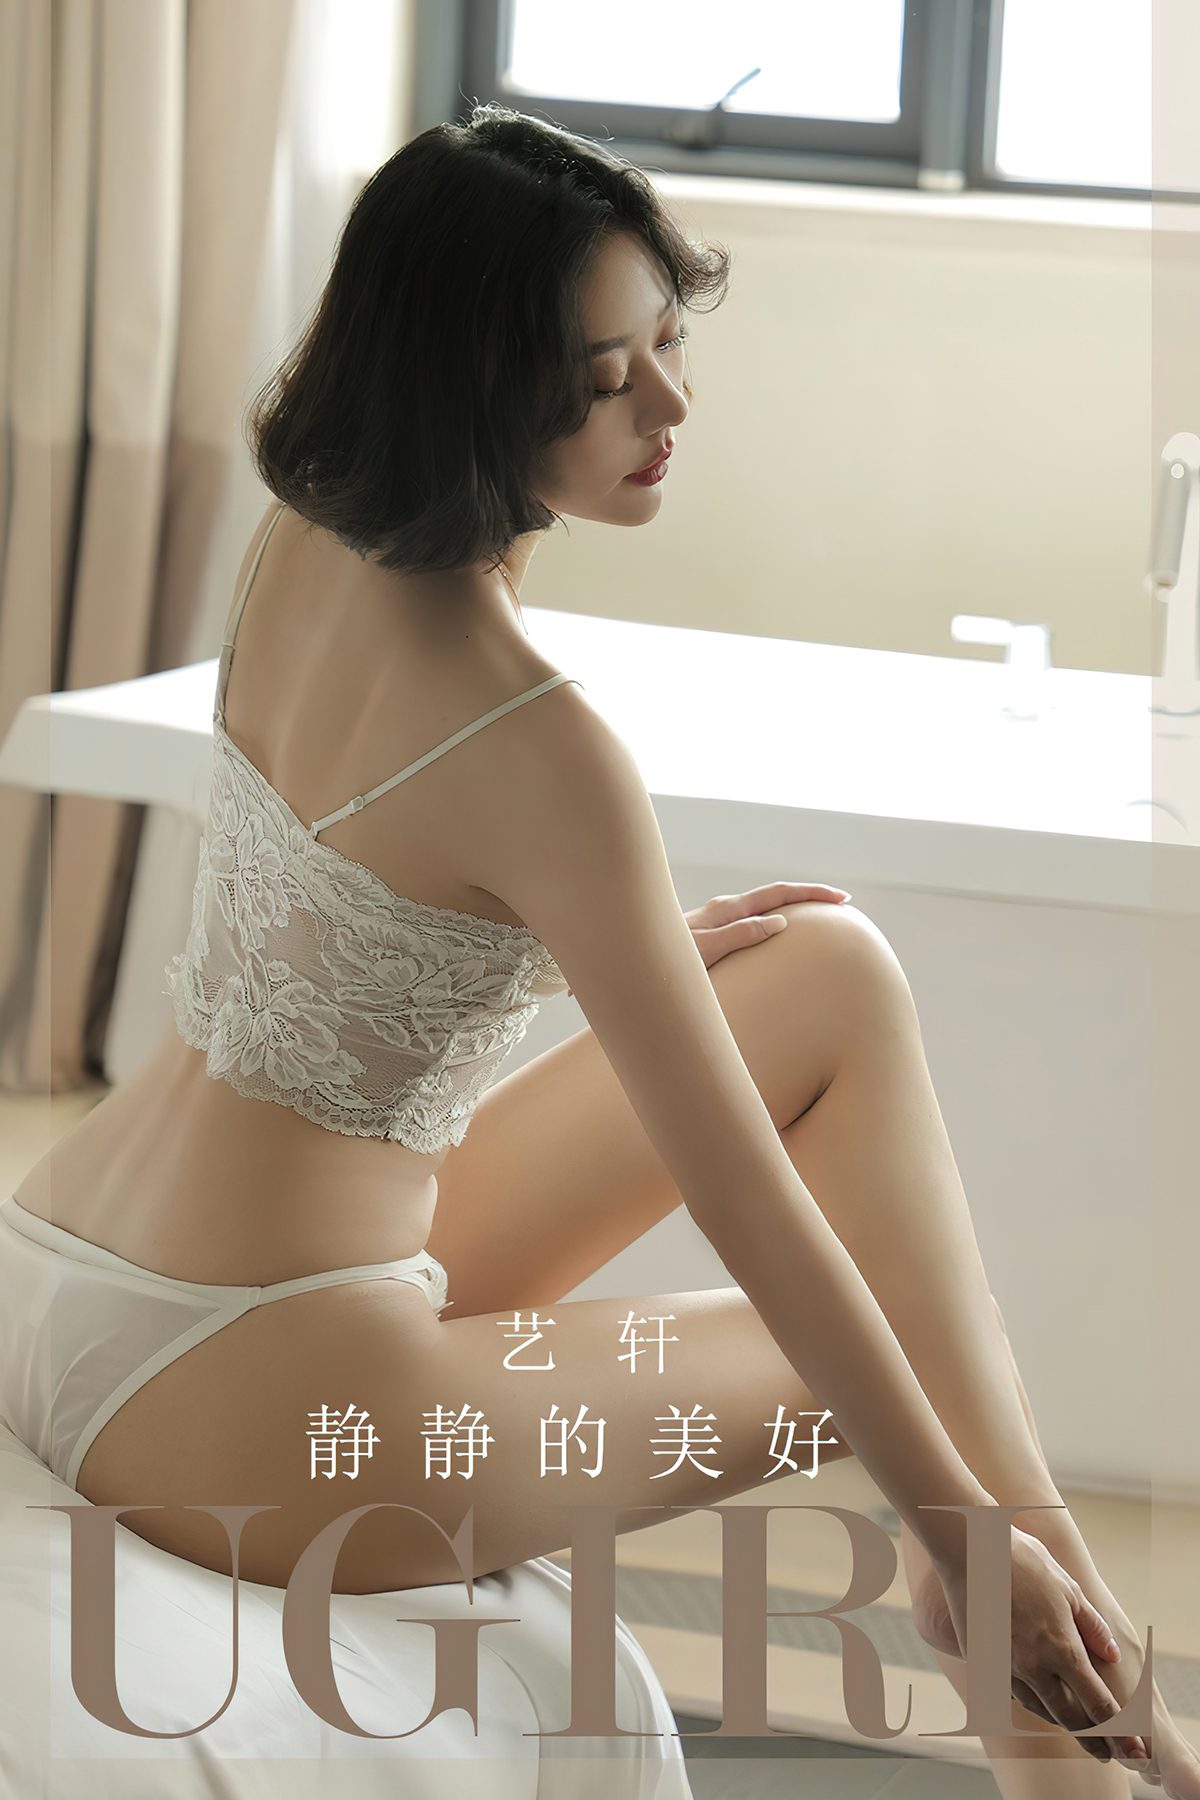 Ugirls App尤果圈 No.2704 Jing Jing Di Mei Hao